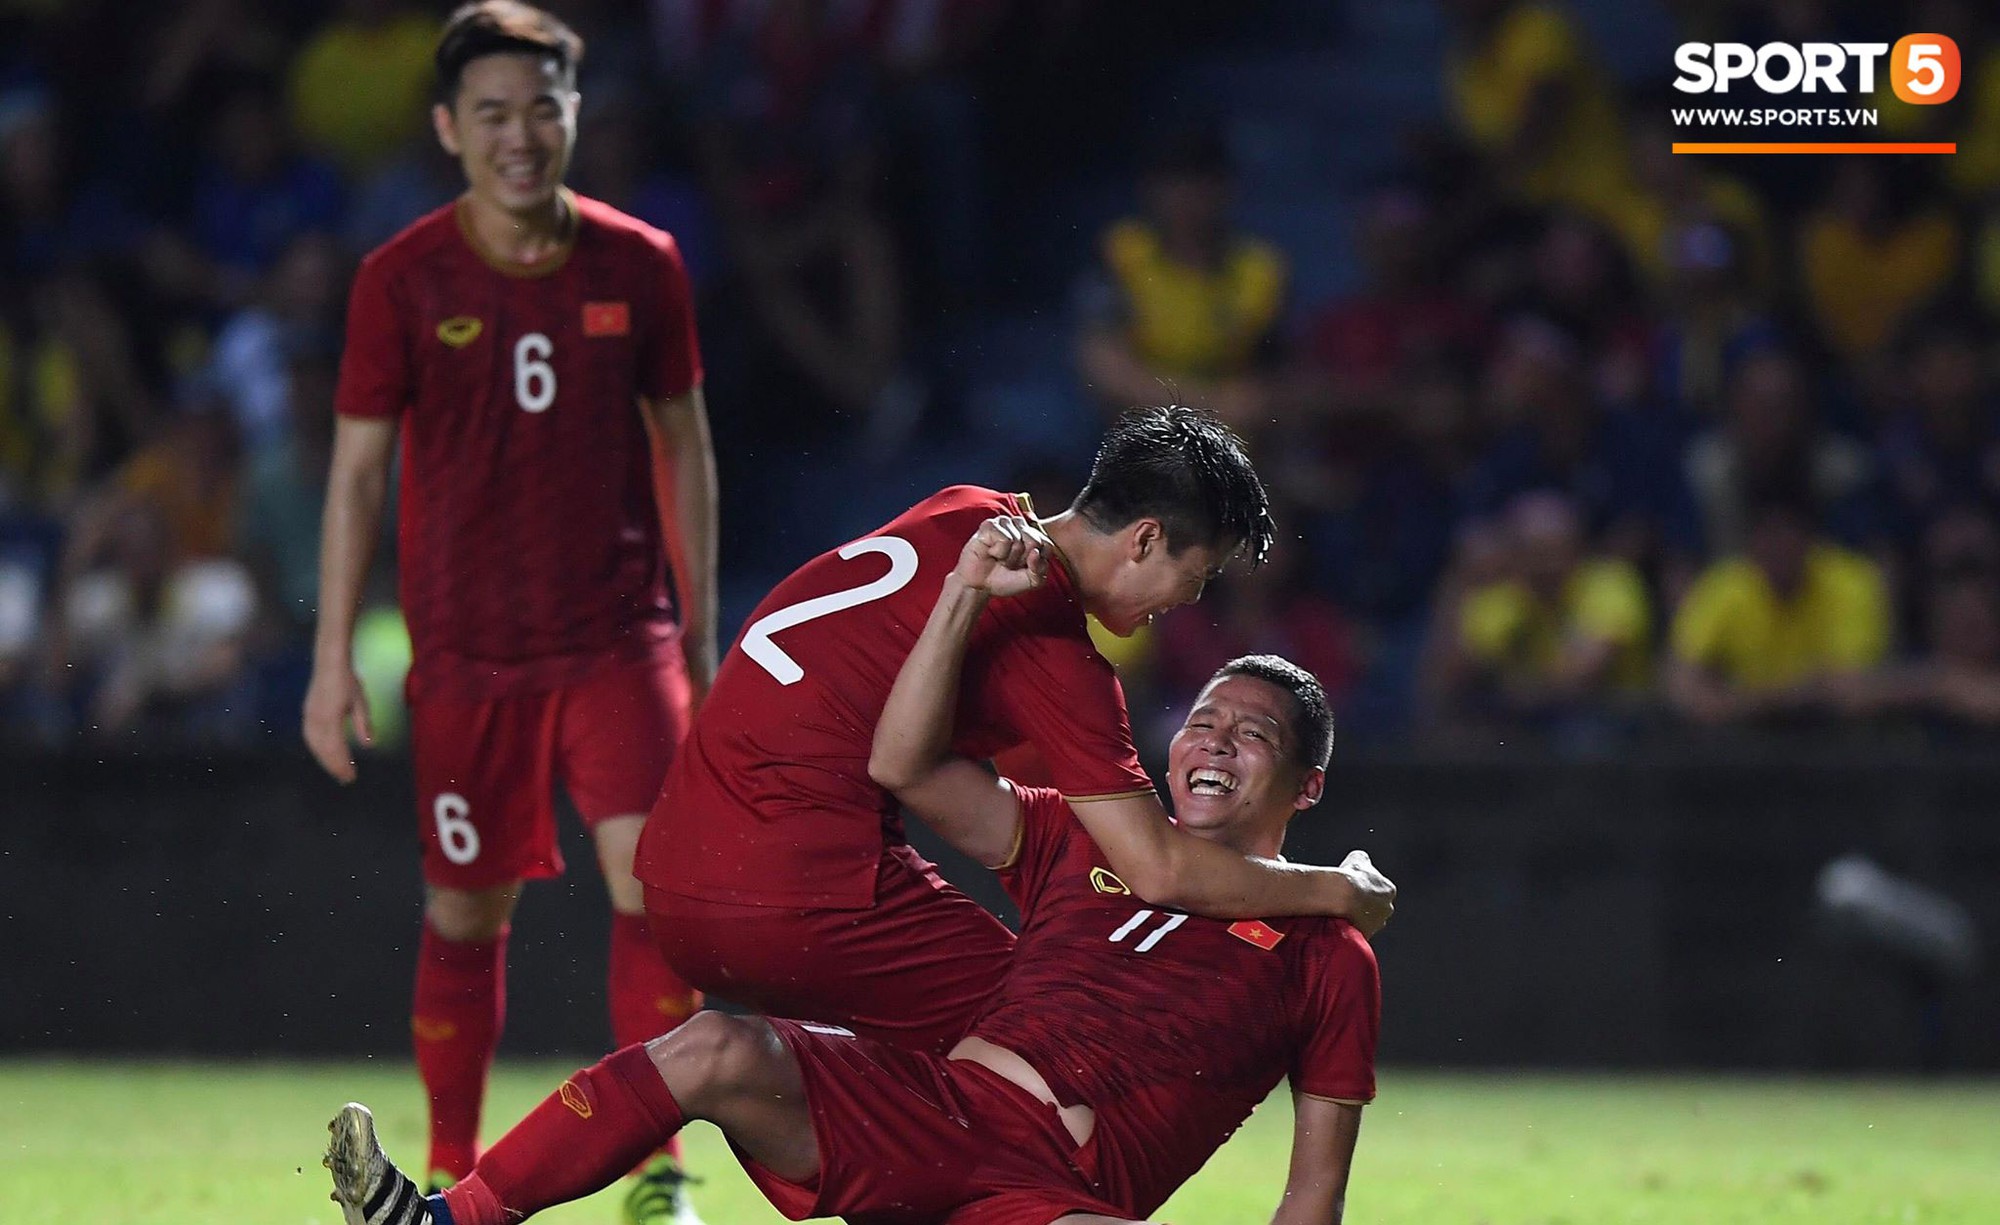 Anh Đức ghi bàn phút bù giờ, tuyển Việt Nam hạ Thái Lan để vào chung kết Kings Cup - Ảnh 1.